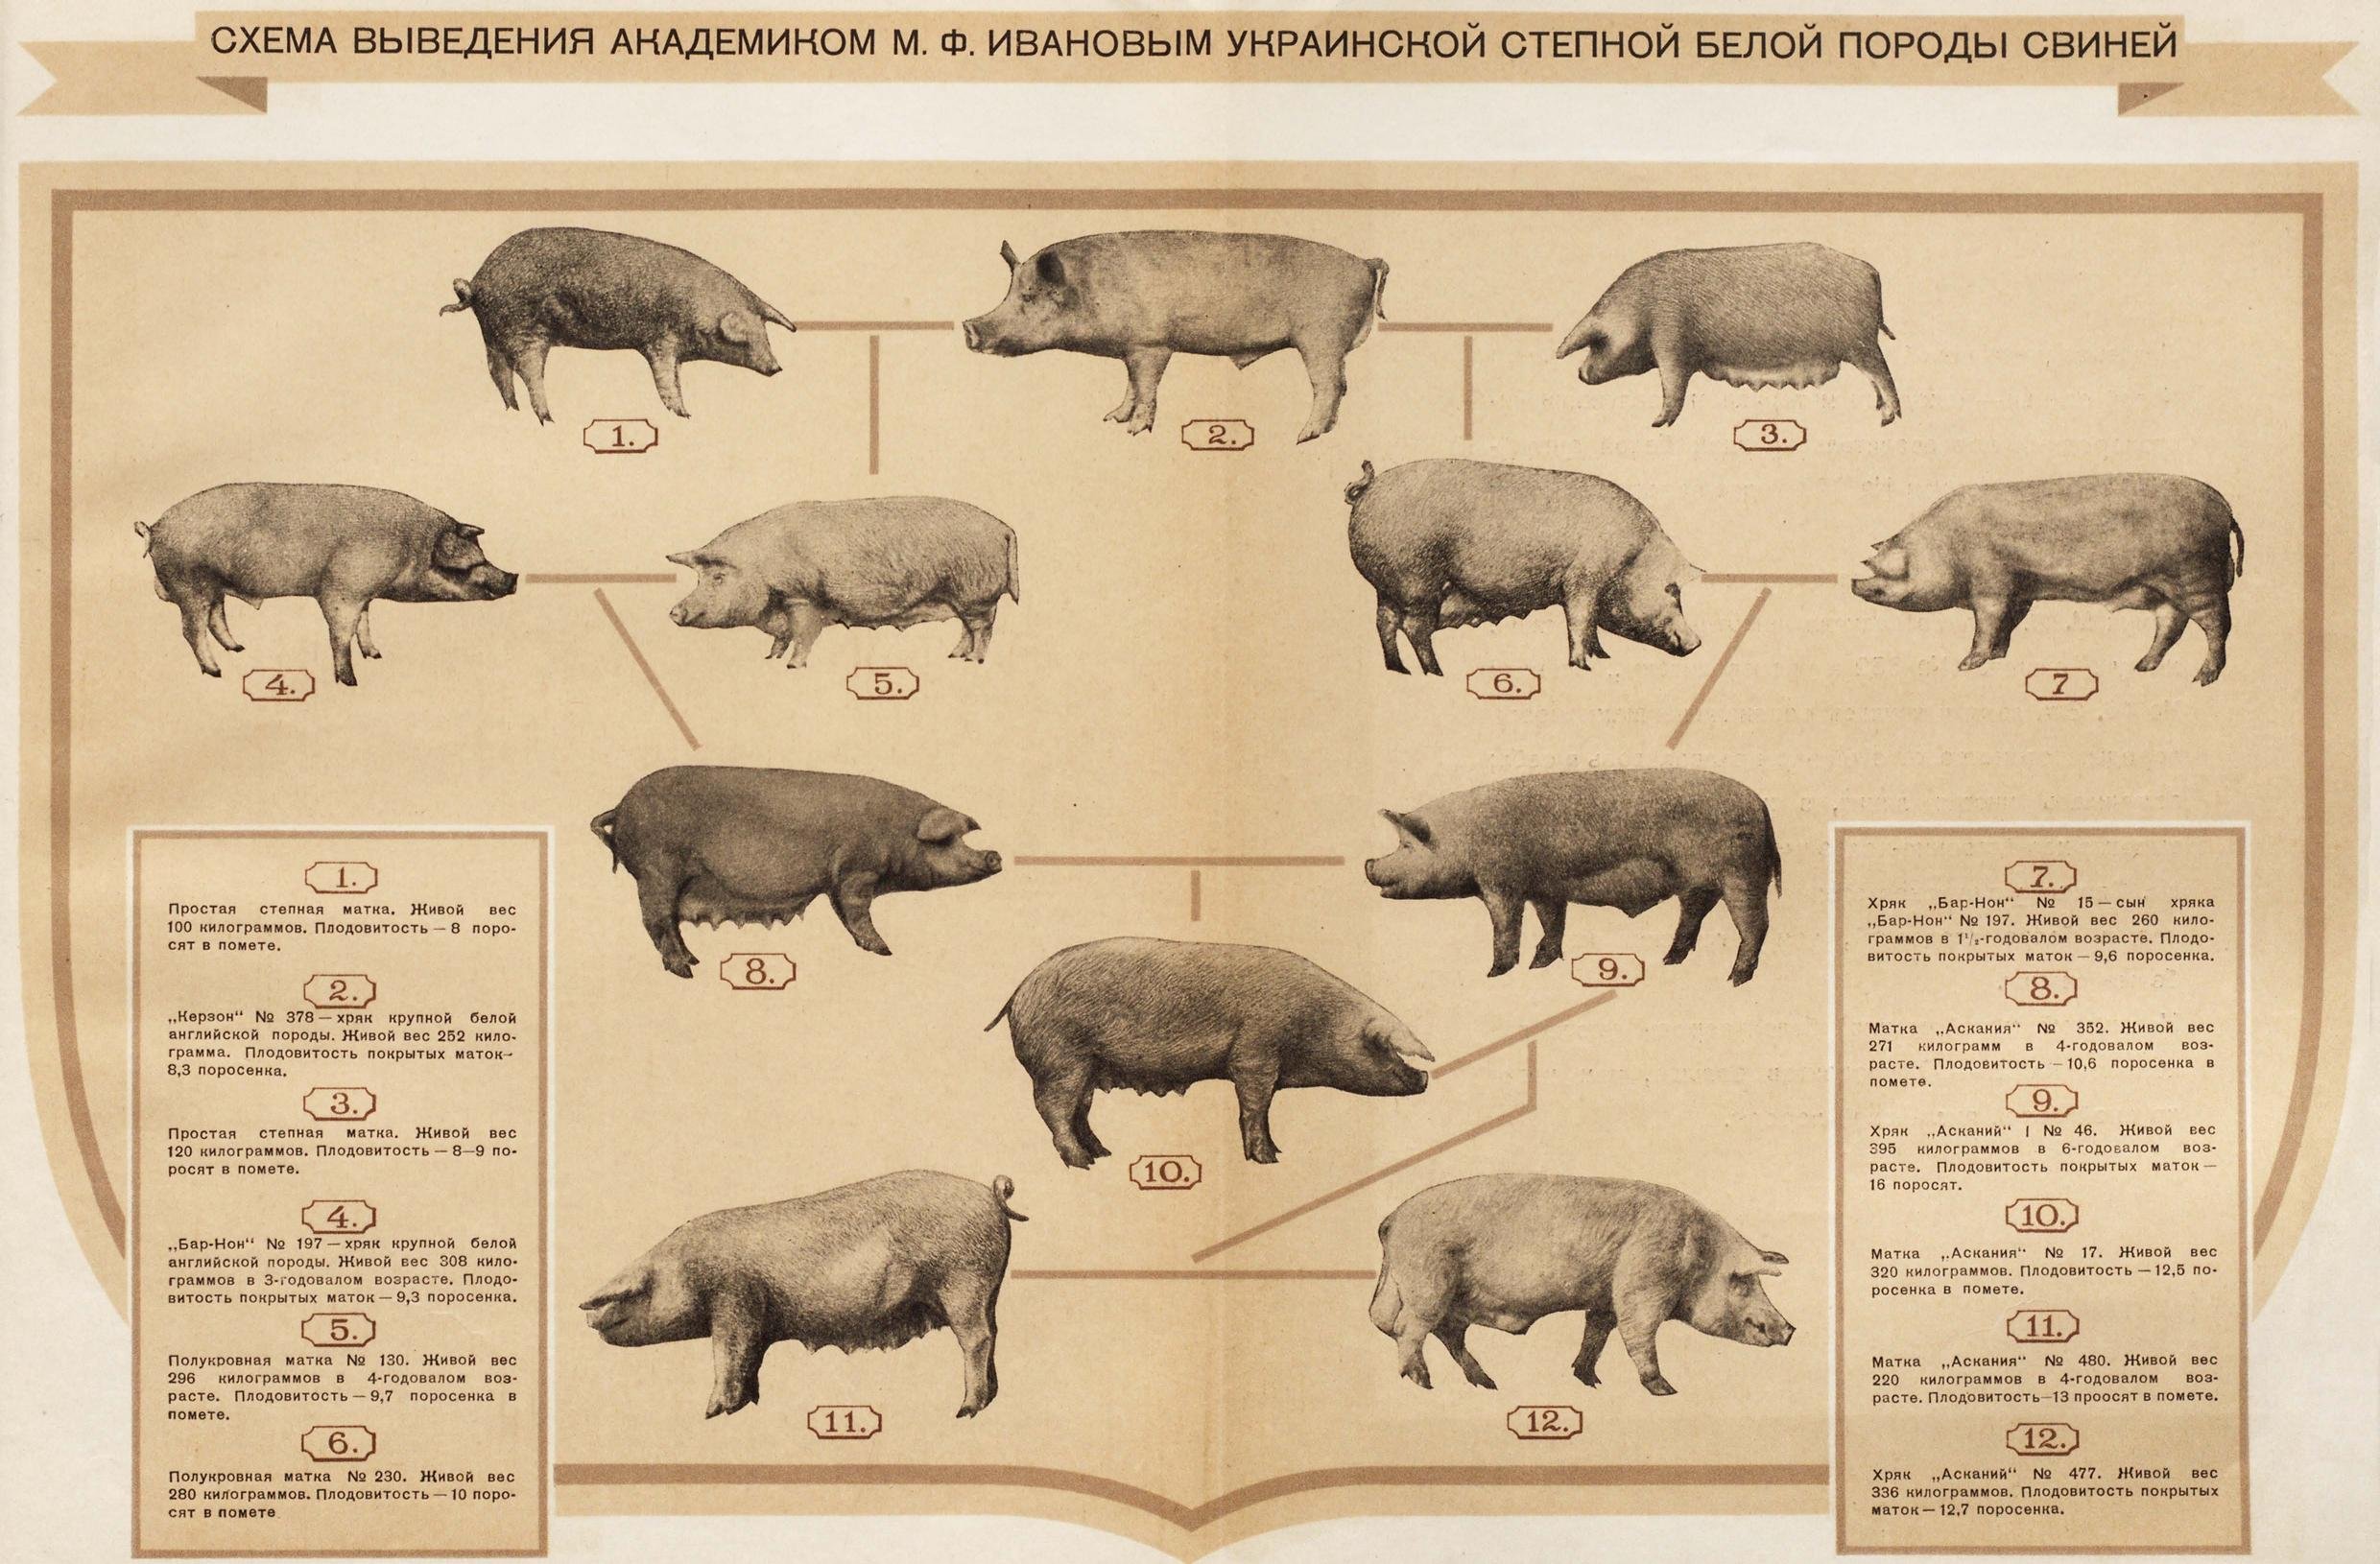 Список свиньи. Схема выведения украинской Степной белой породы свиней. Украинская Степная белая порода свиней. Выведение украинской Степной белой породы свиней. Схема пород свиней.